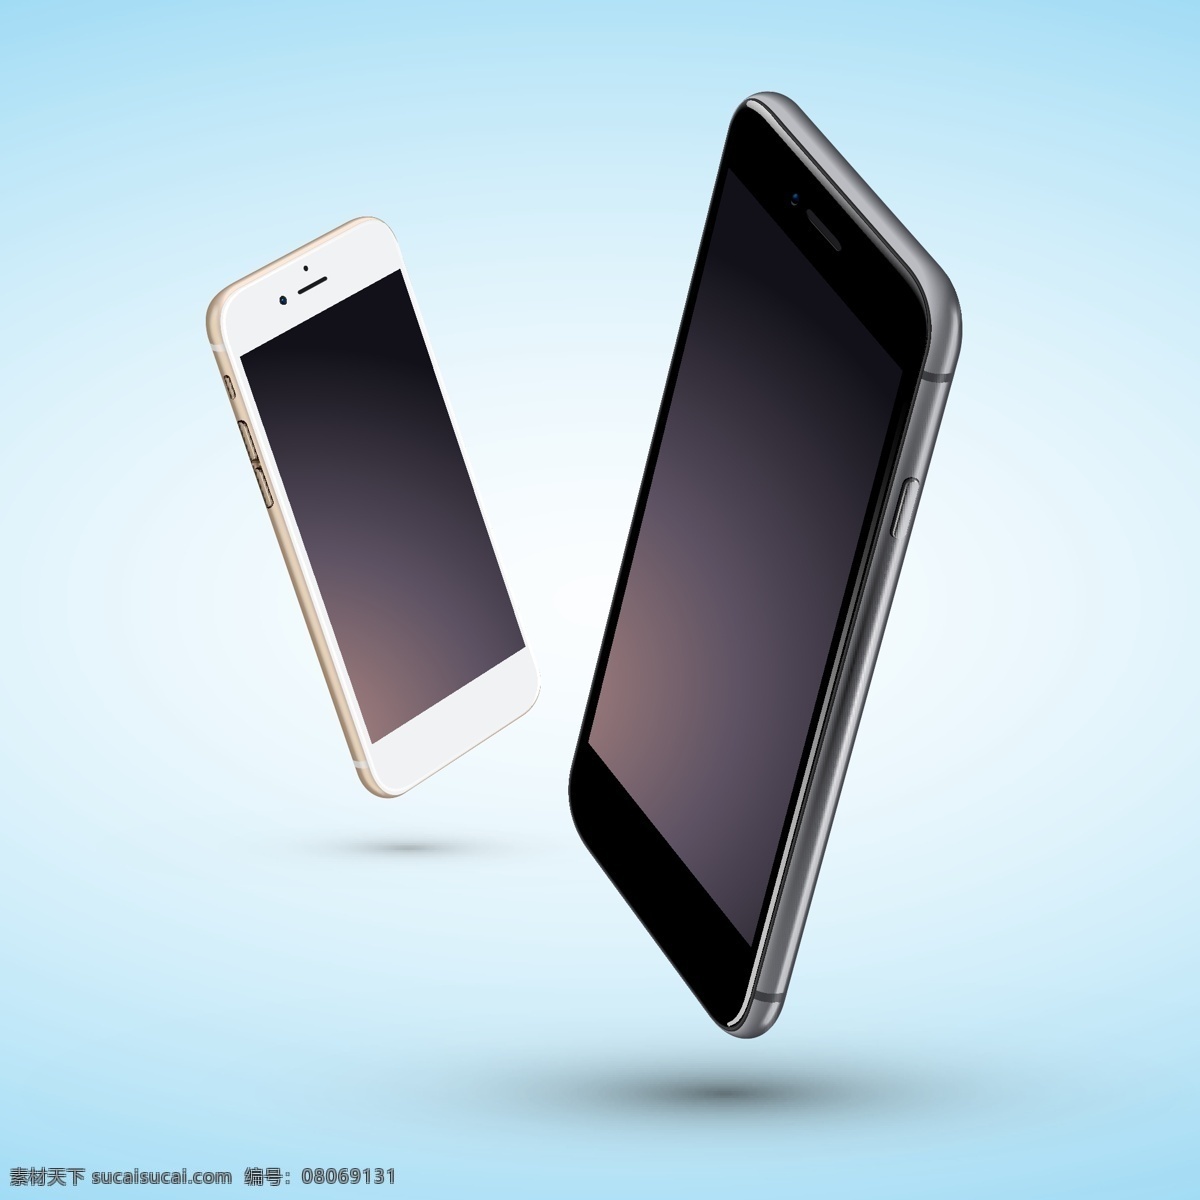 苹果 iphone6s iphone 6s plus 时尚 旗舰手机 美国 手机 通信器材 数码家电 数码产品 苹果手机 现代科技